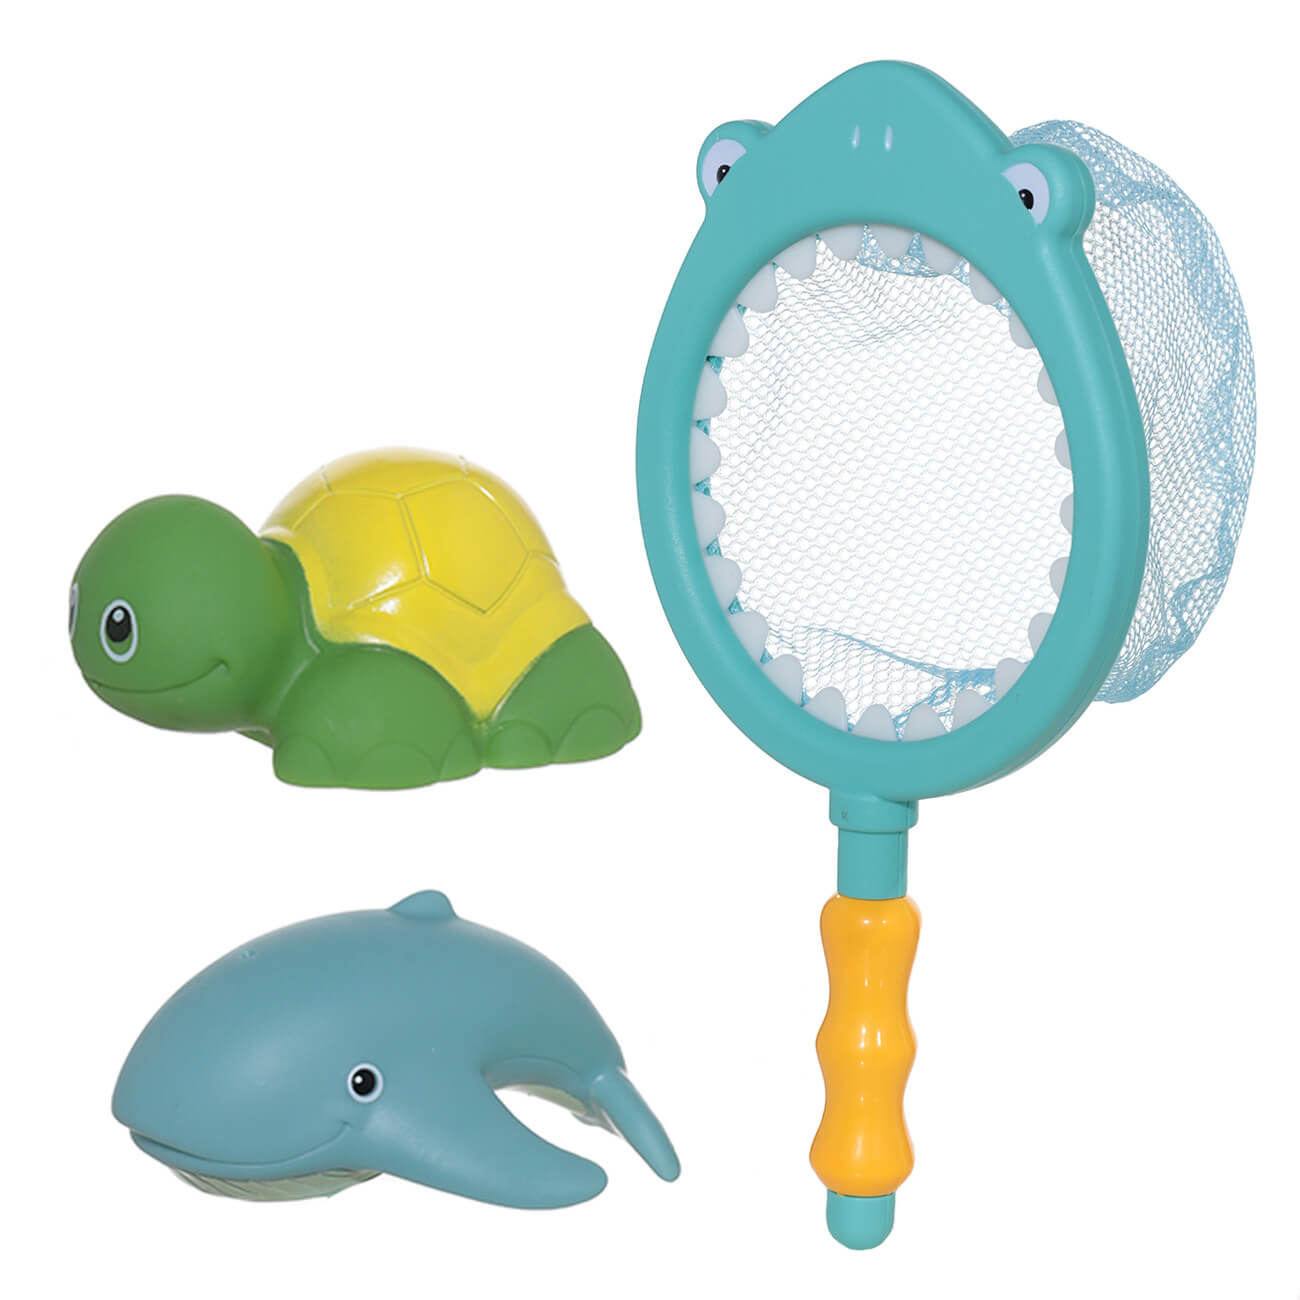 Набор игрушек для купания, 3 пр, сачок/игрушки, резина/пластик, Акула, Aquatic animals набор для шитья одежда для игрушек малюток тепло и уют